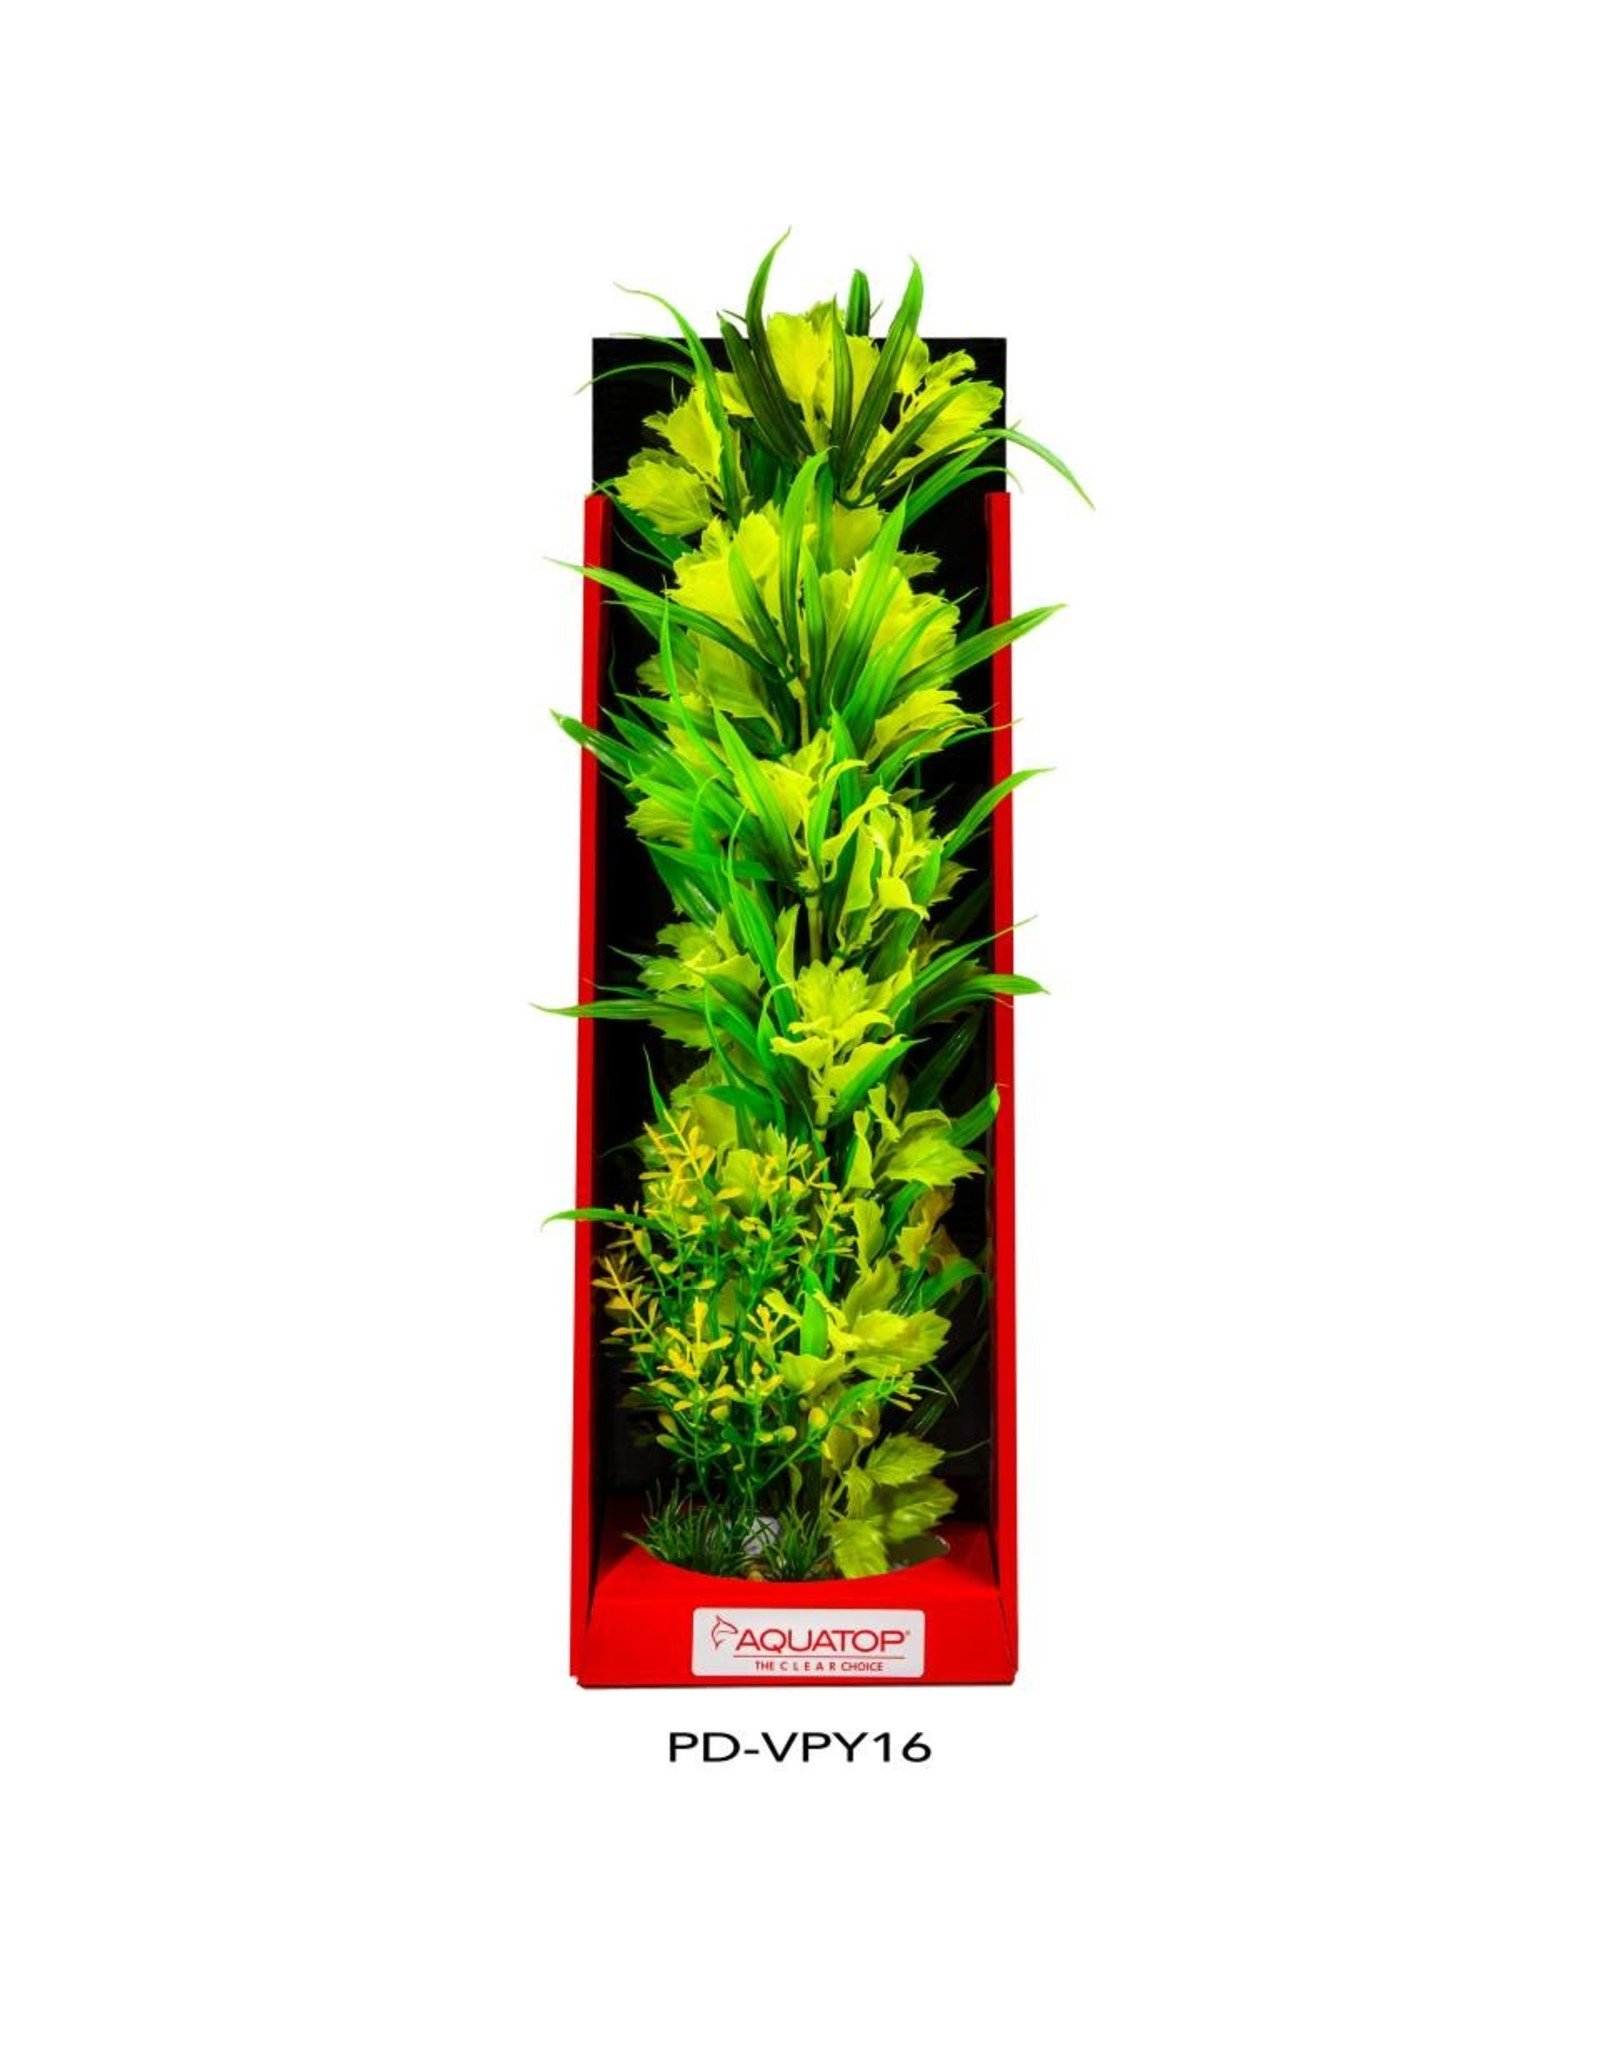 AquaTop AQUATOP Vibrant Passion Plant Series